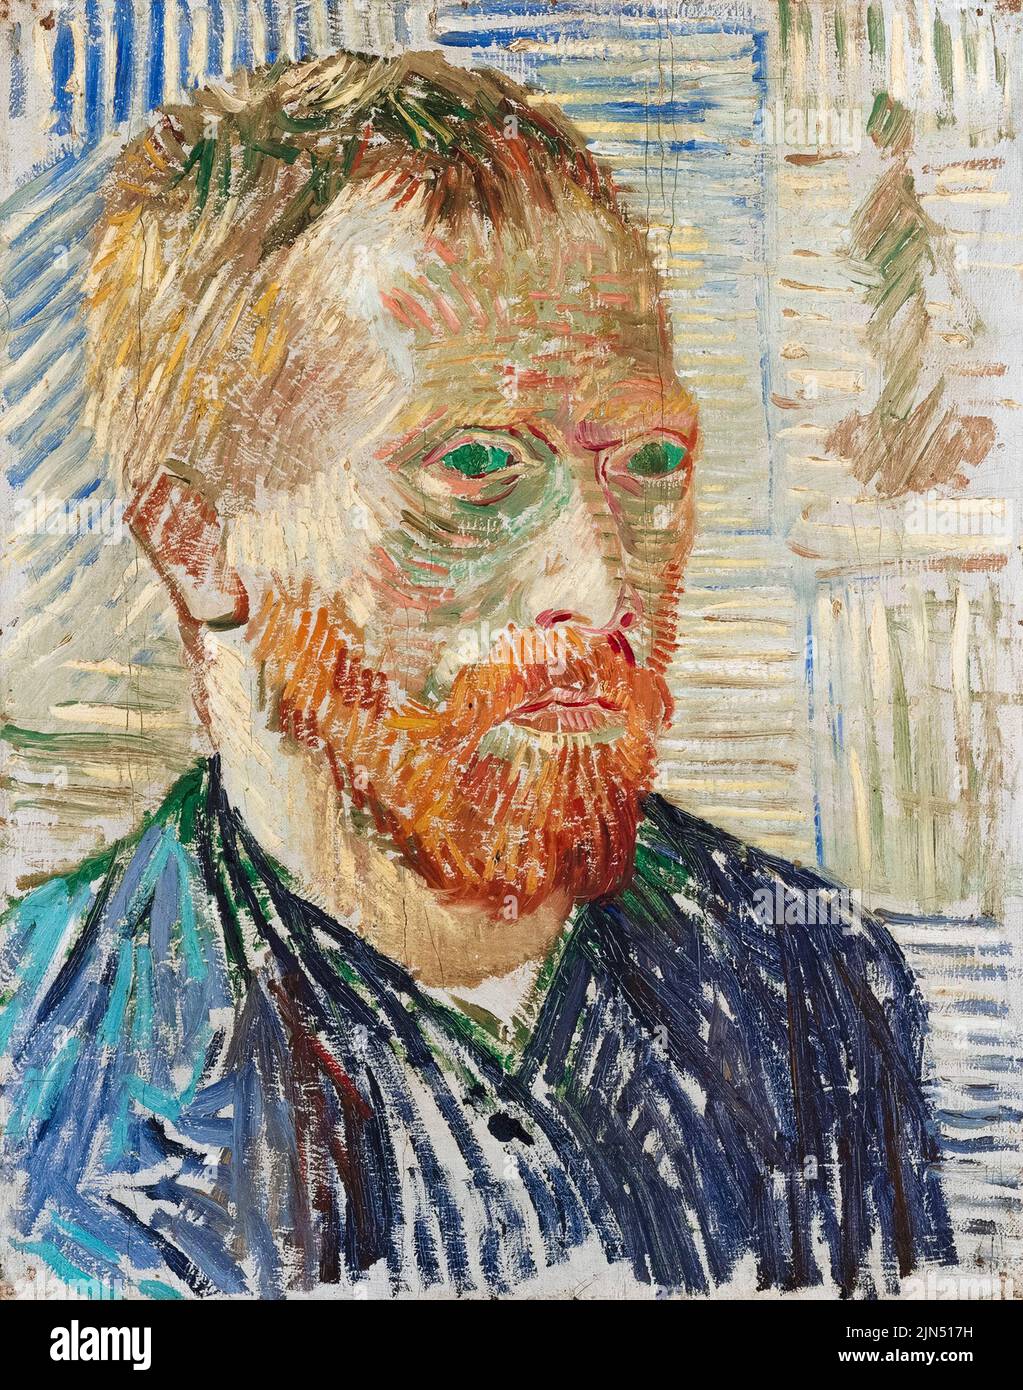 Vincent van Gogh (1853-1890), autoportrait avec une impression japonaise, peinture à l'huile sur toile, 1887 Banque D'Images